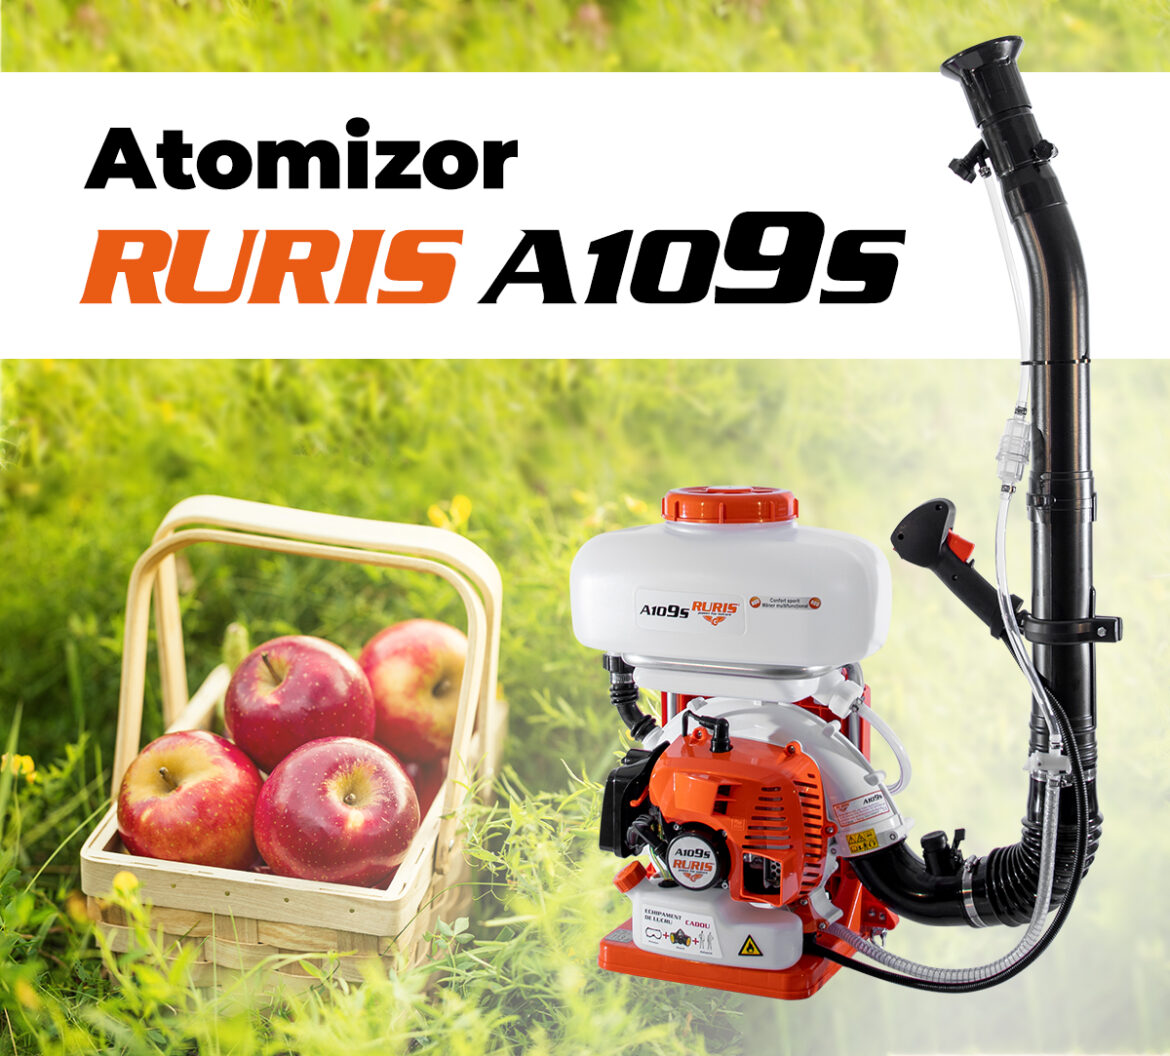 Atomizorul RURIS A109S: soluția ideală pentru cei care doresc să obțină o recoltă bogată